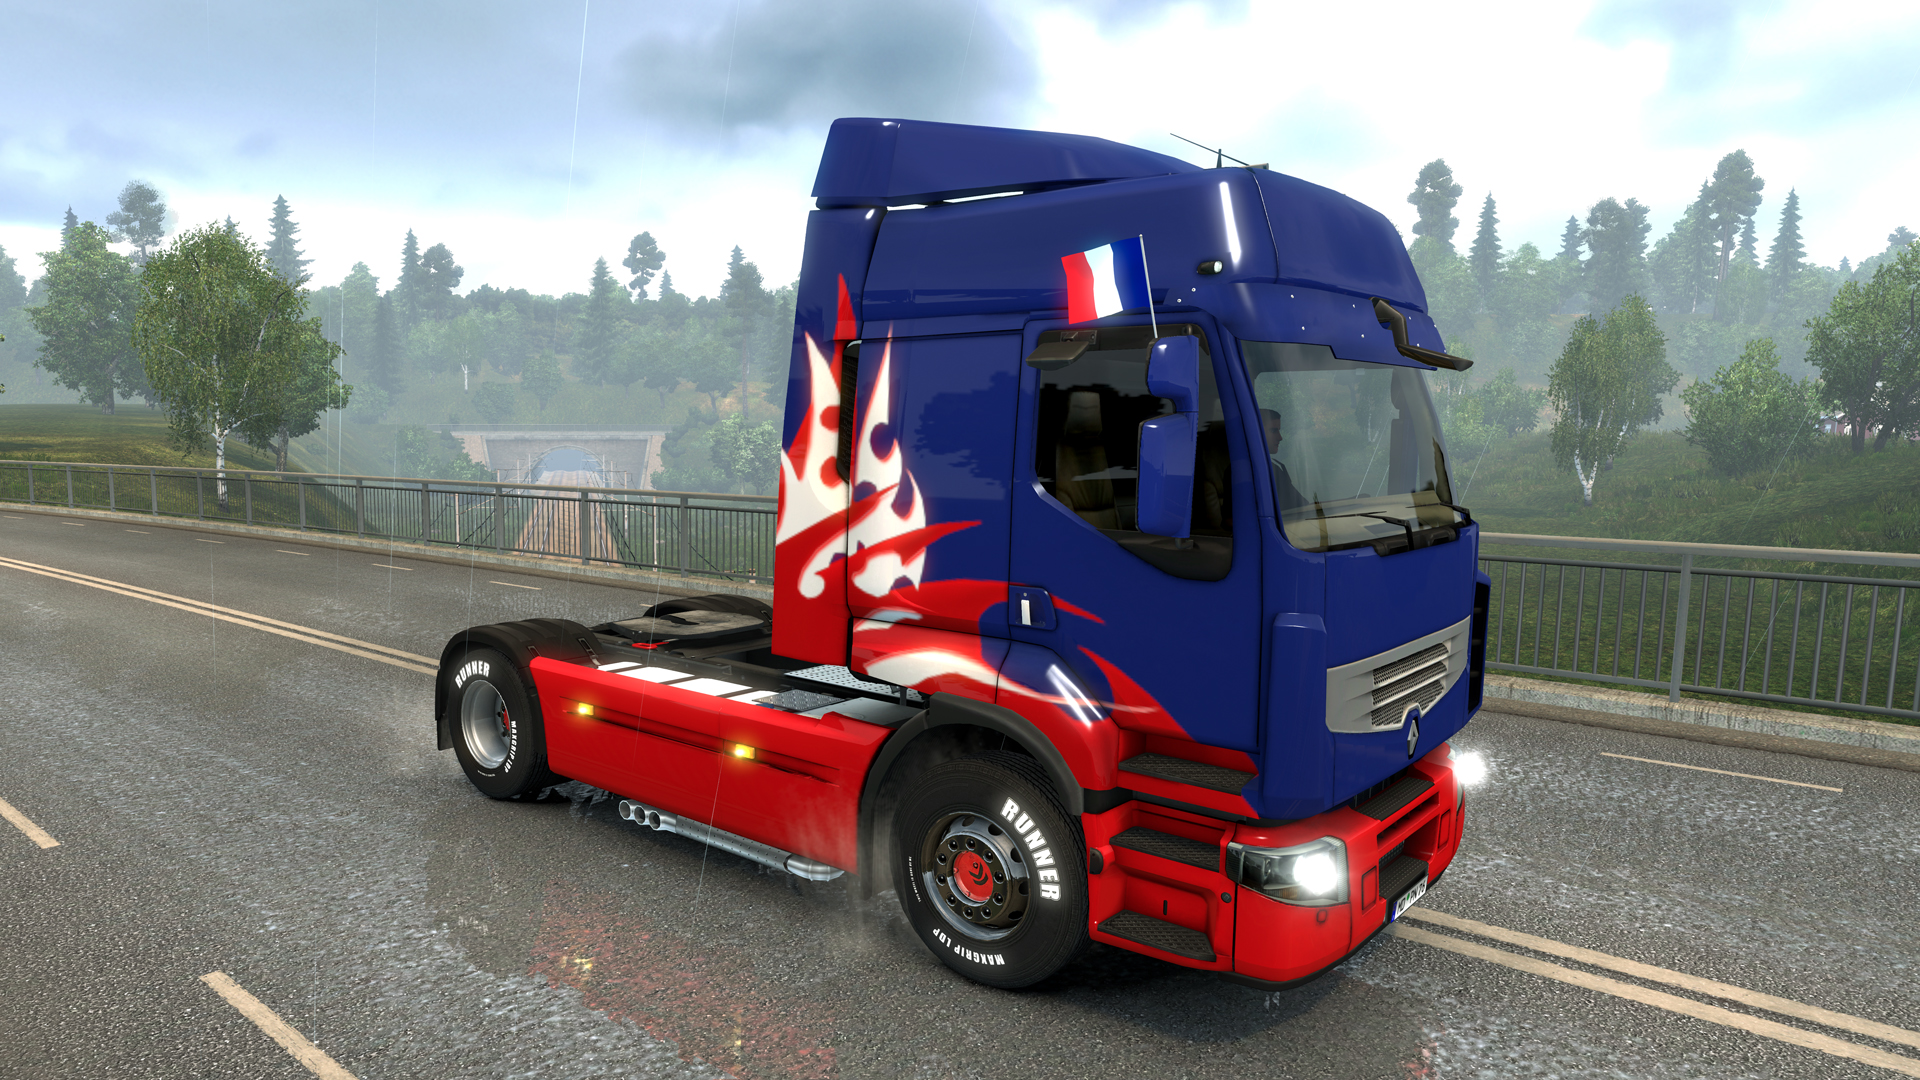 euro truck simulator 2 crack 1.24.2.1